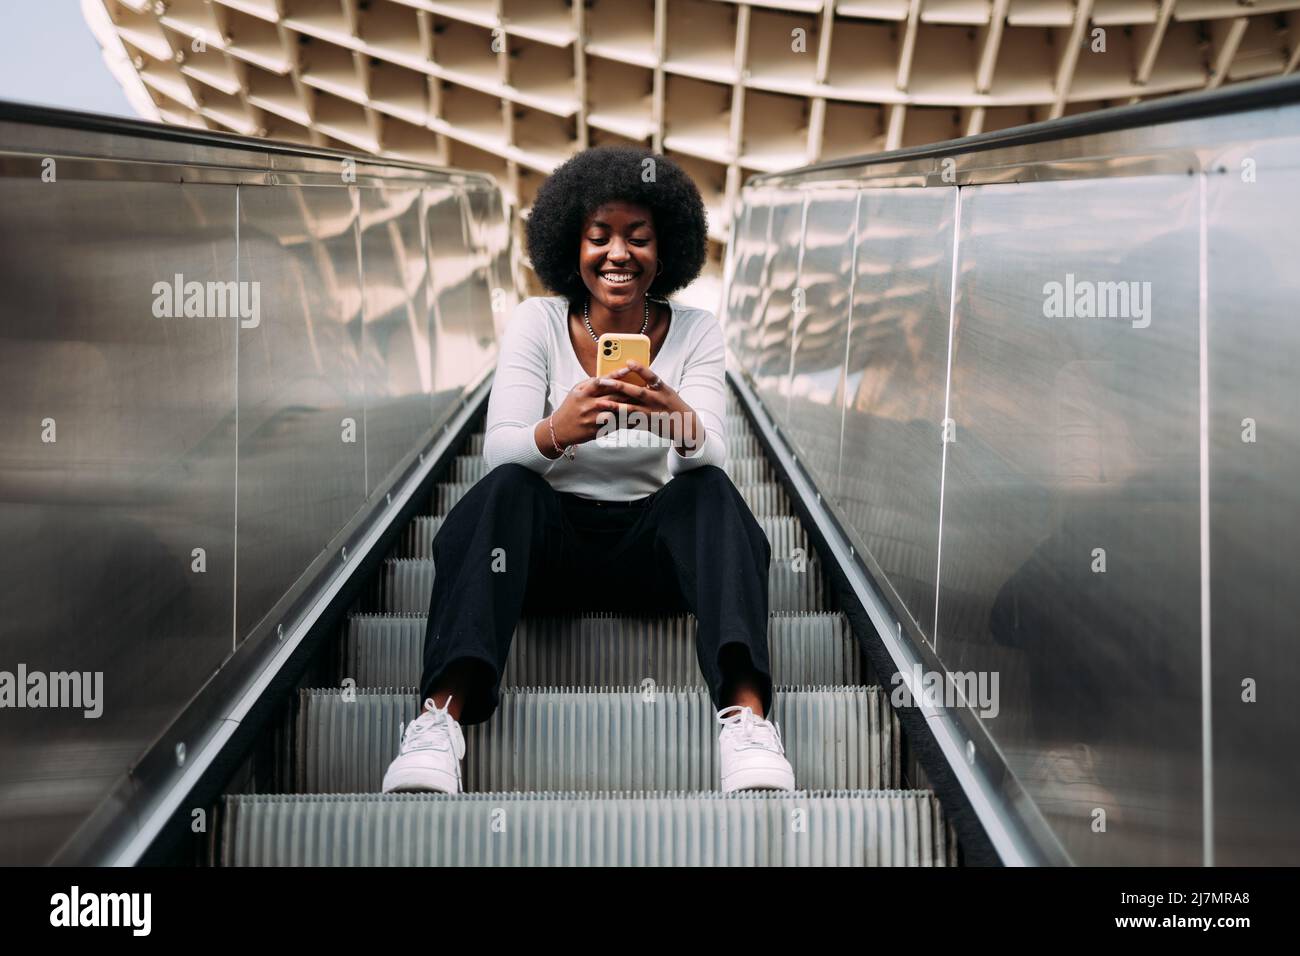 Jeune adolescente noire souriante avec des cheveux afro assis sur un escalator extérieur tapant sur son téléphone. Banque D'Images